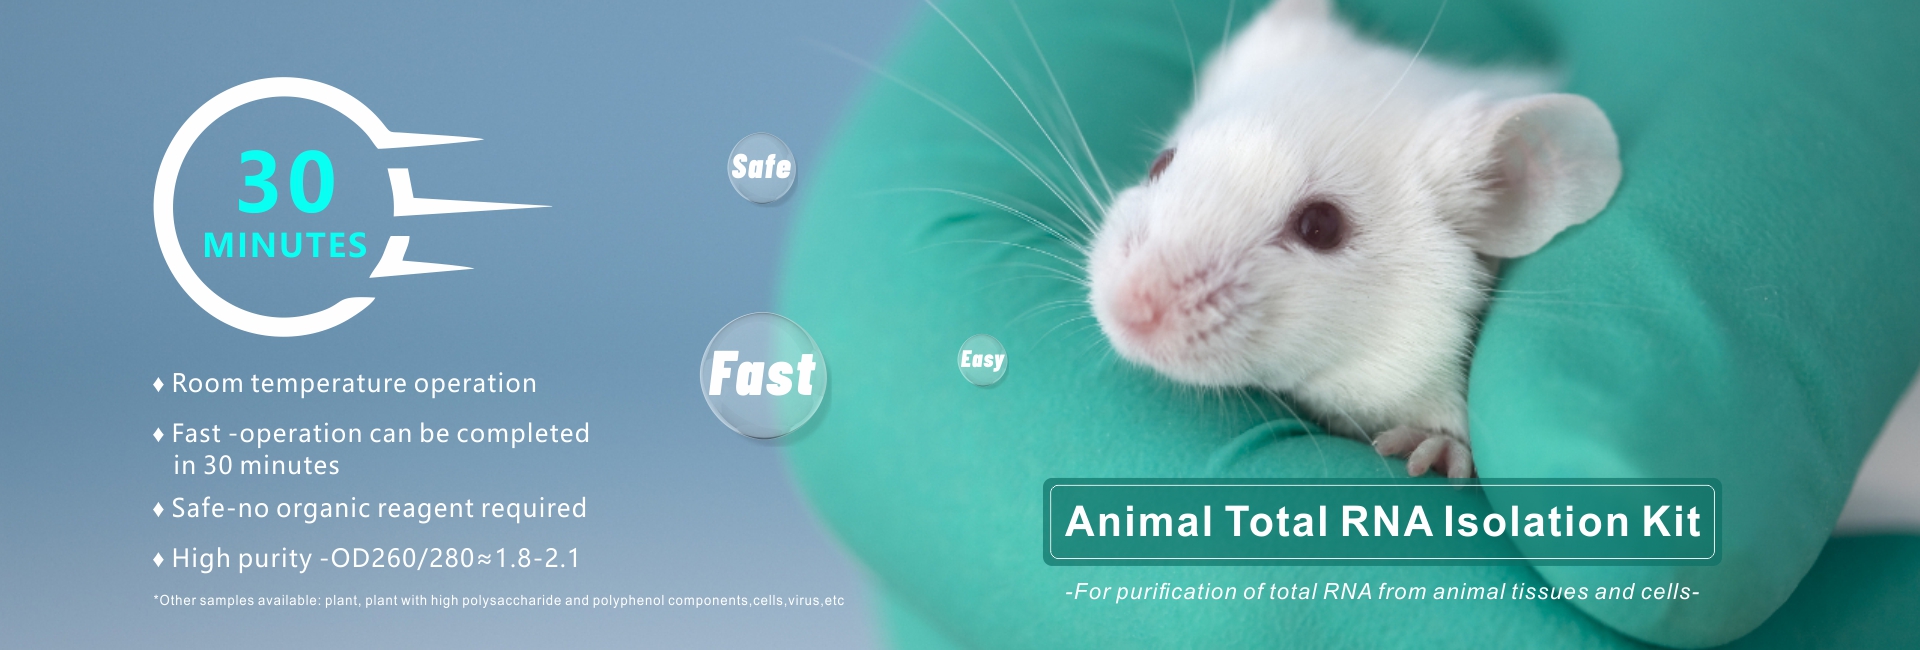 állat teljes RNS izolációs készlet -- banner